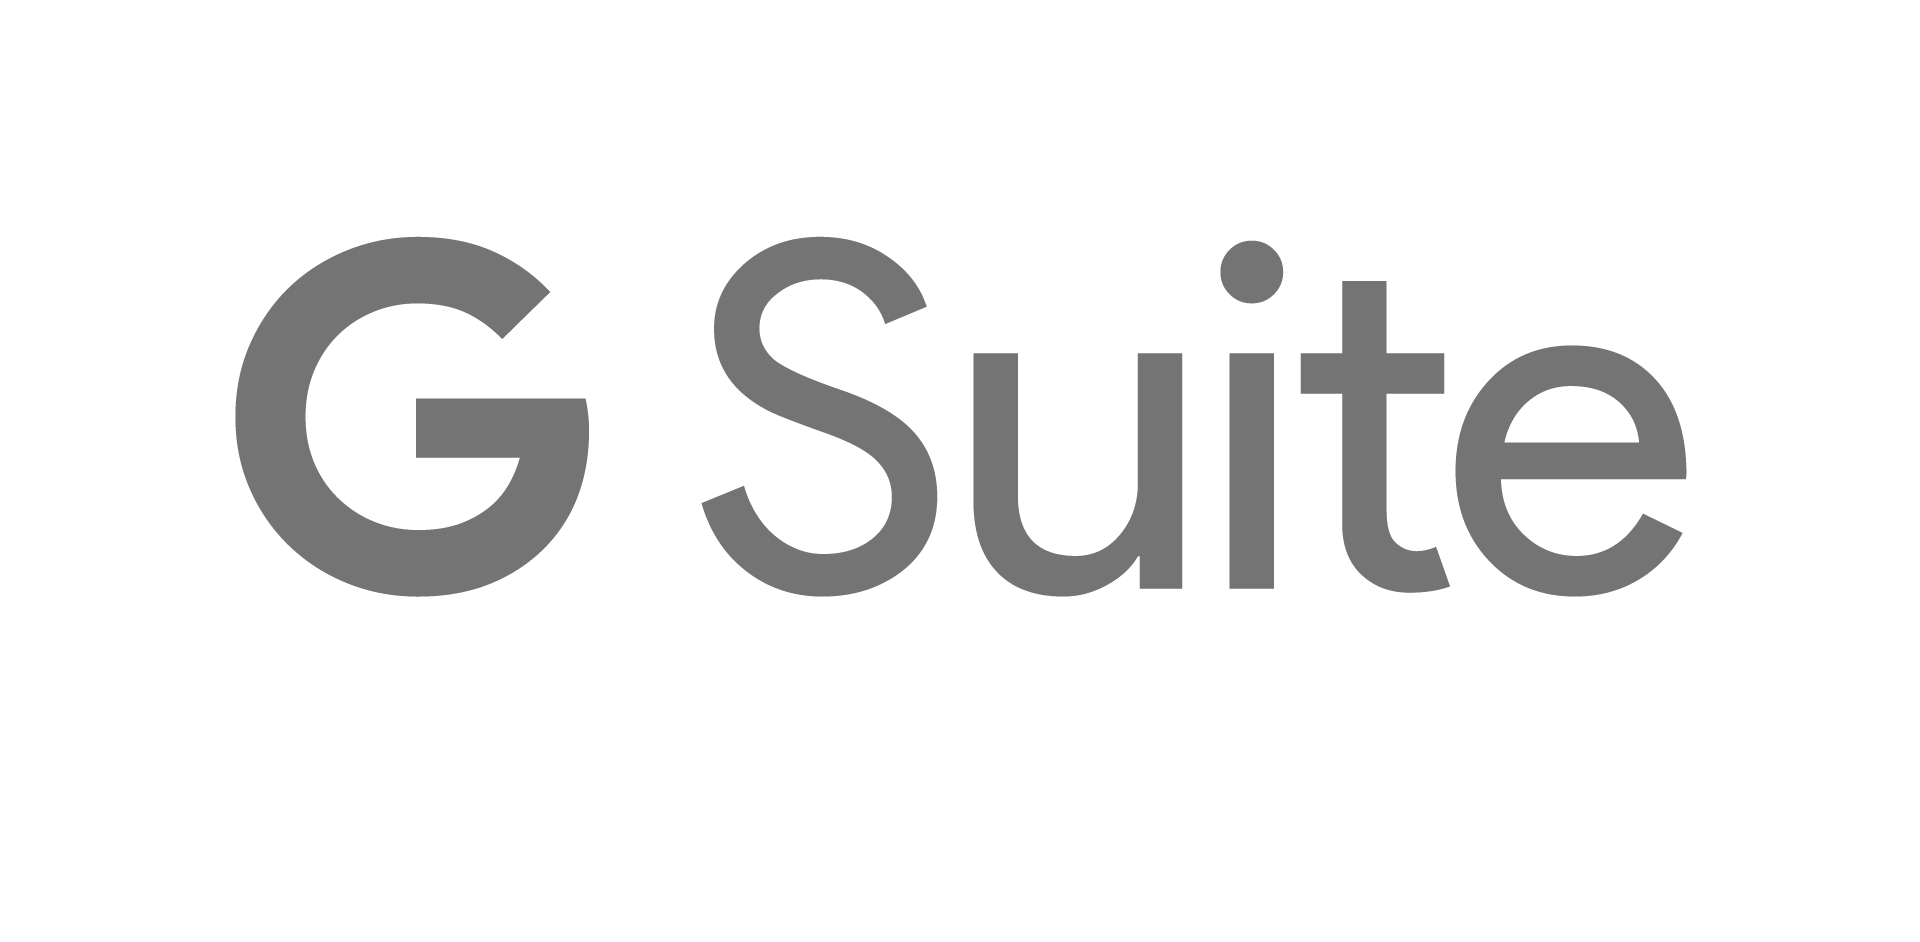 G Suite